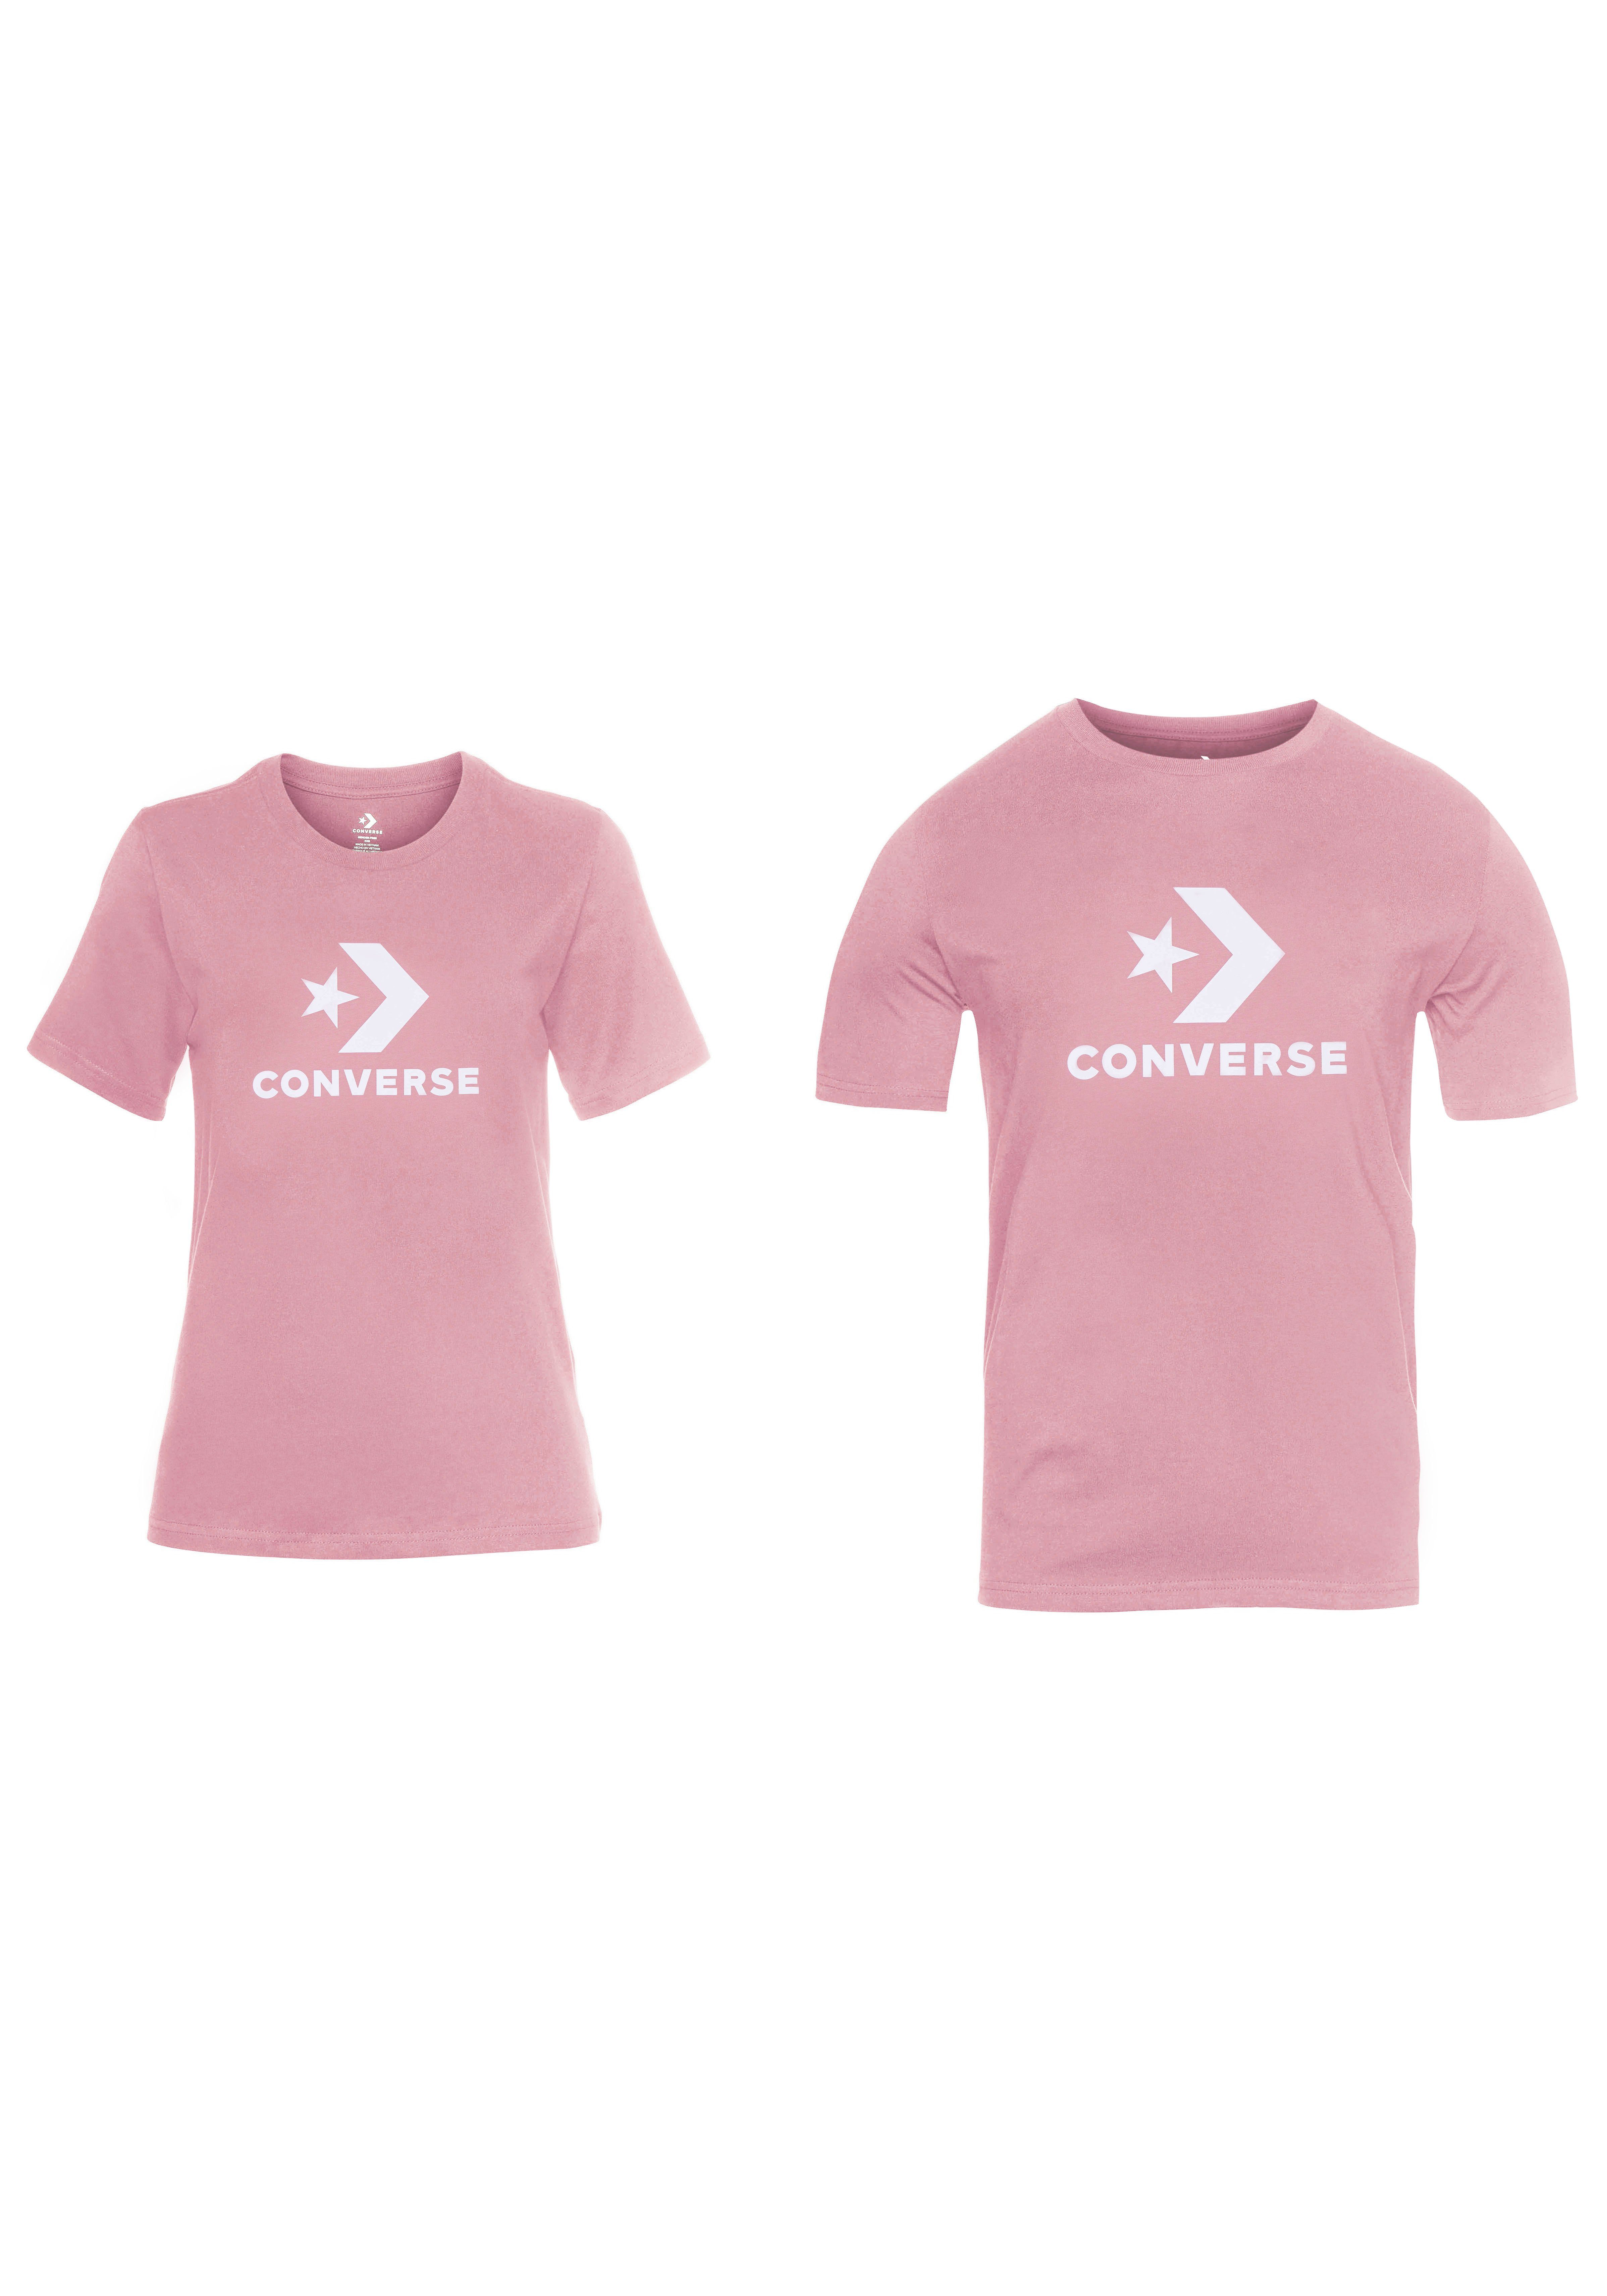 UNISEX dunkelrosa CHEVRON STAR Converse T-SHIRT T-Shirt LOGO